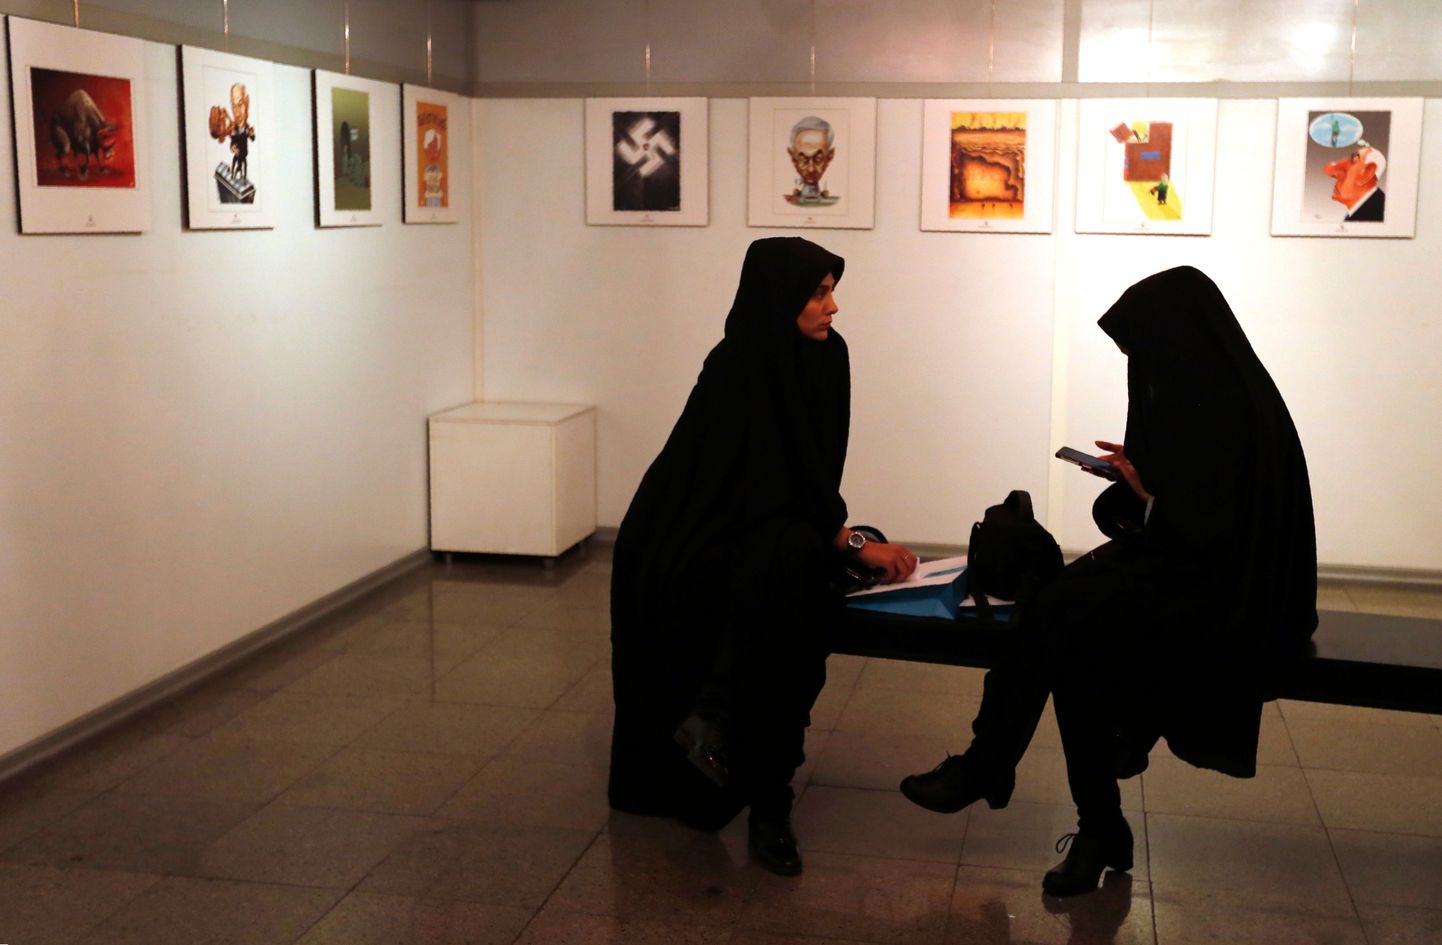 Iraani naised täna näitust külastamas.